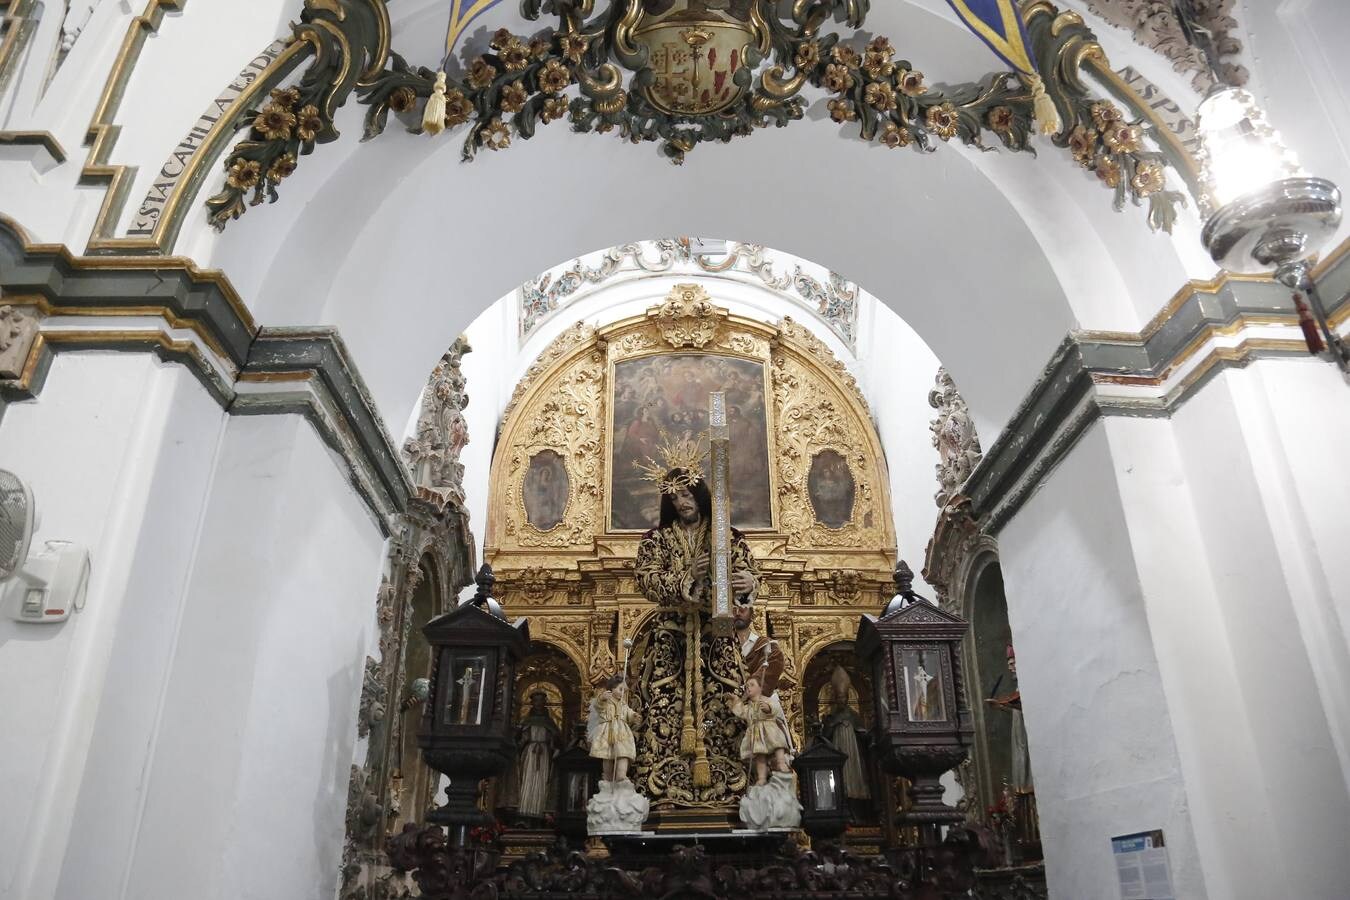 Las estampas históricas de la magna de Córdoba, en imágenes